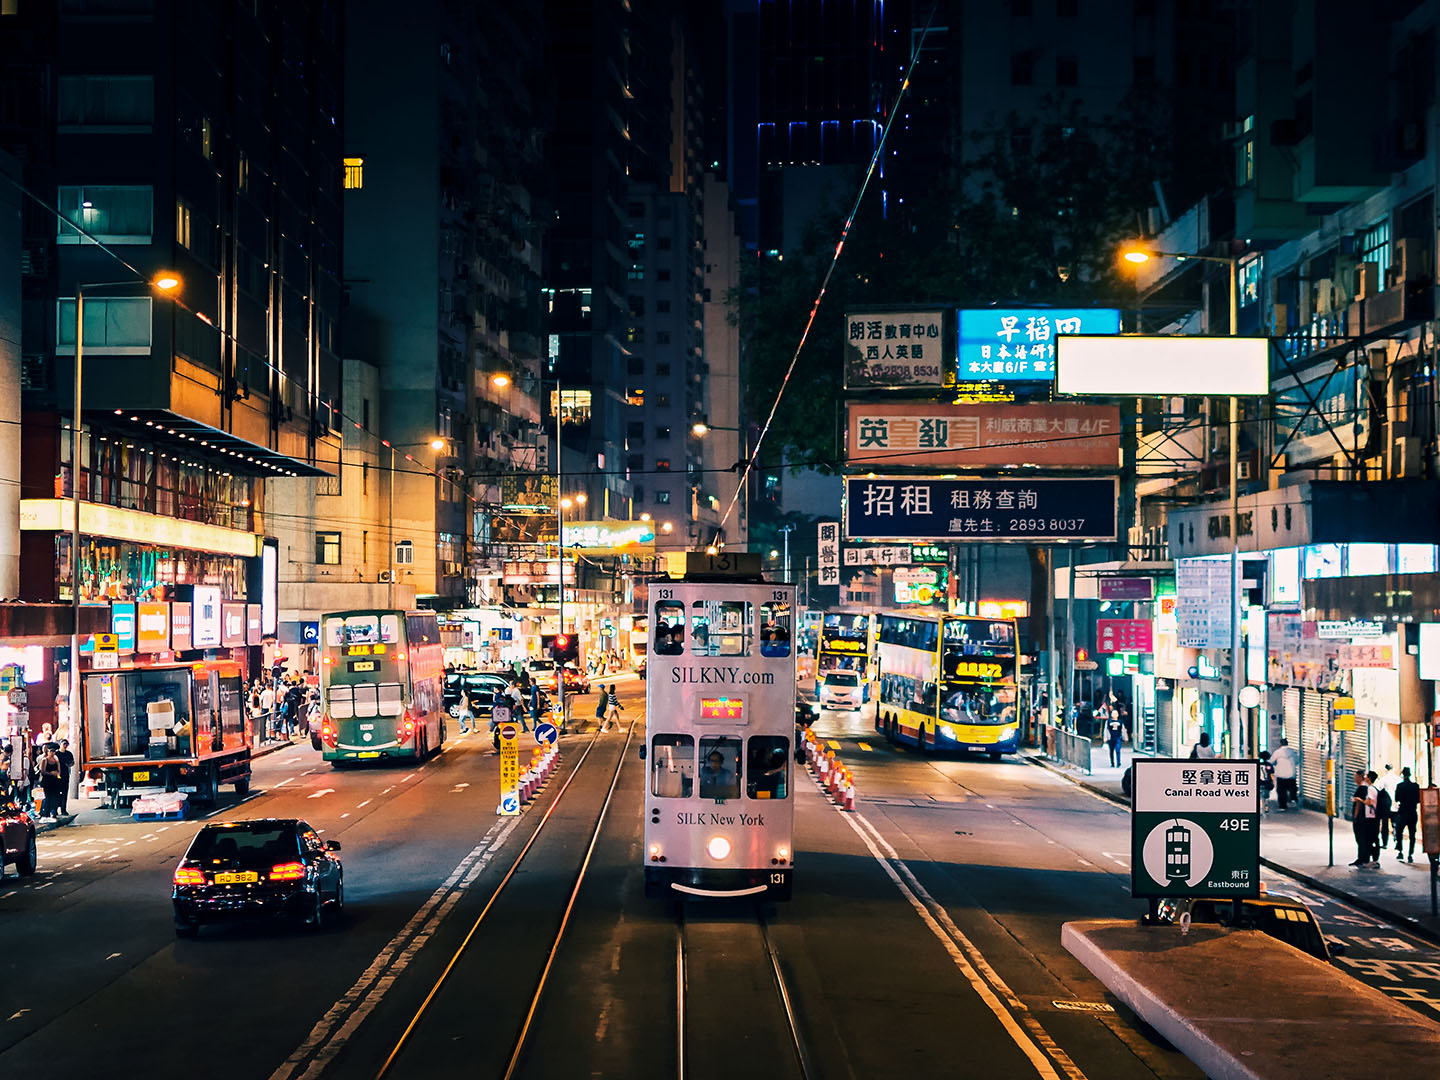 Destination - Hong Kong